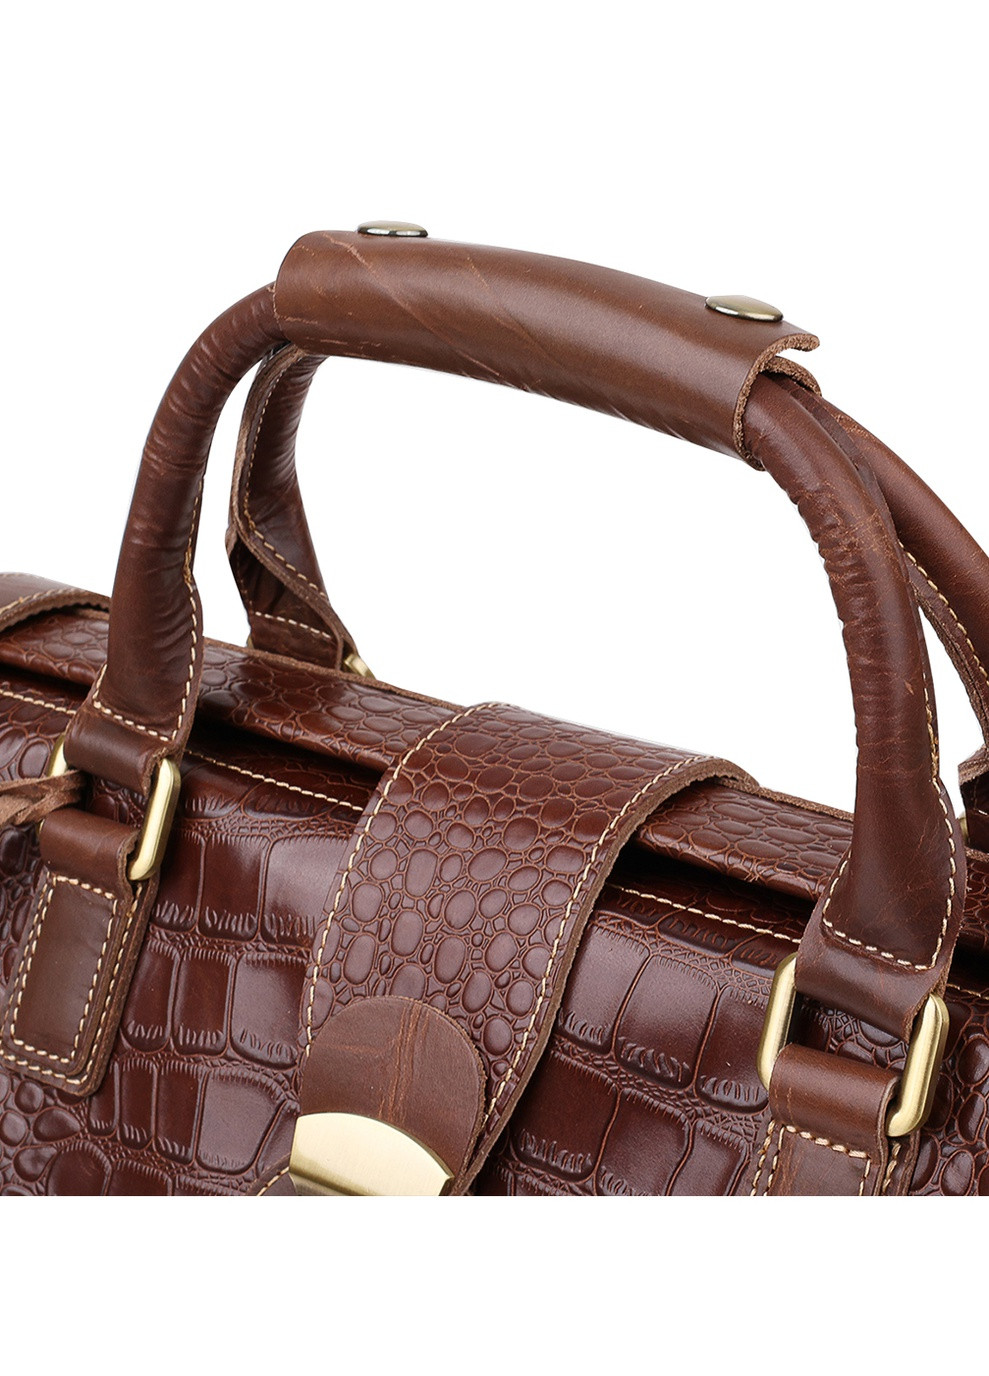 Дорожная кожаная сумка 51х31х15 см Vintage (250096835)